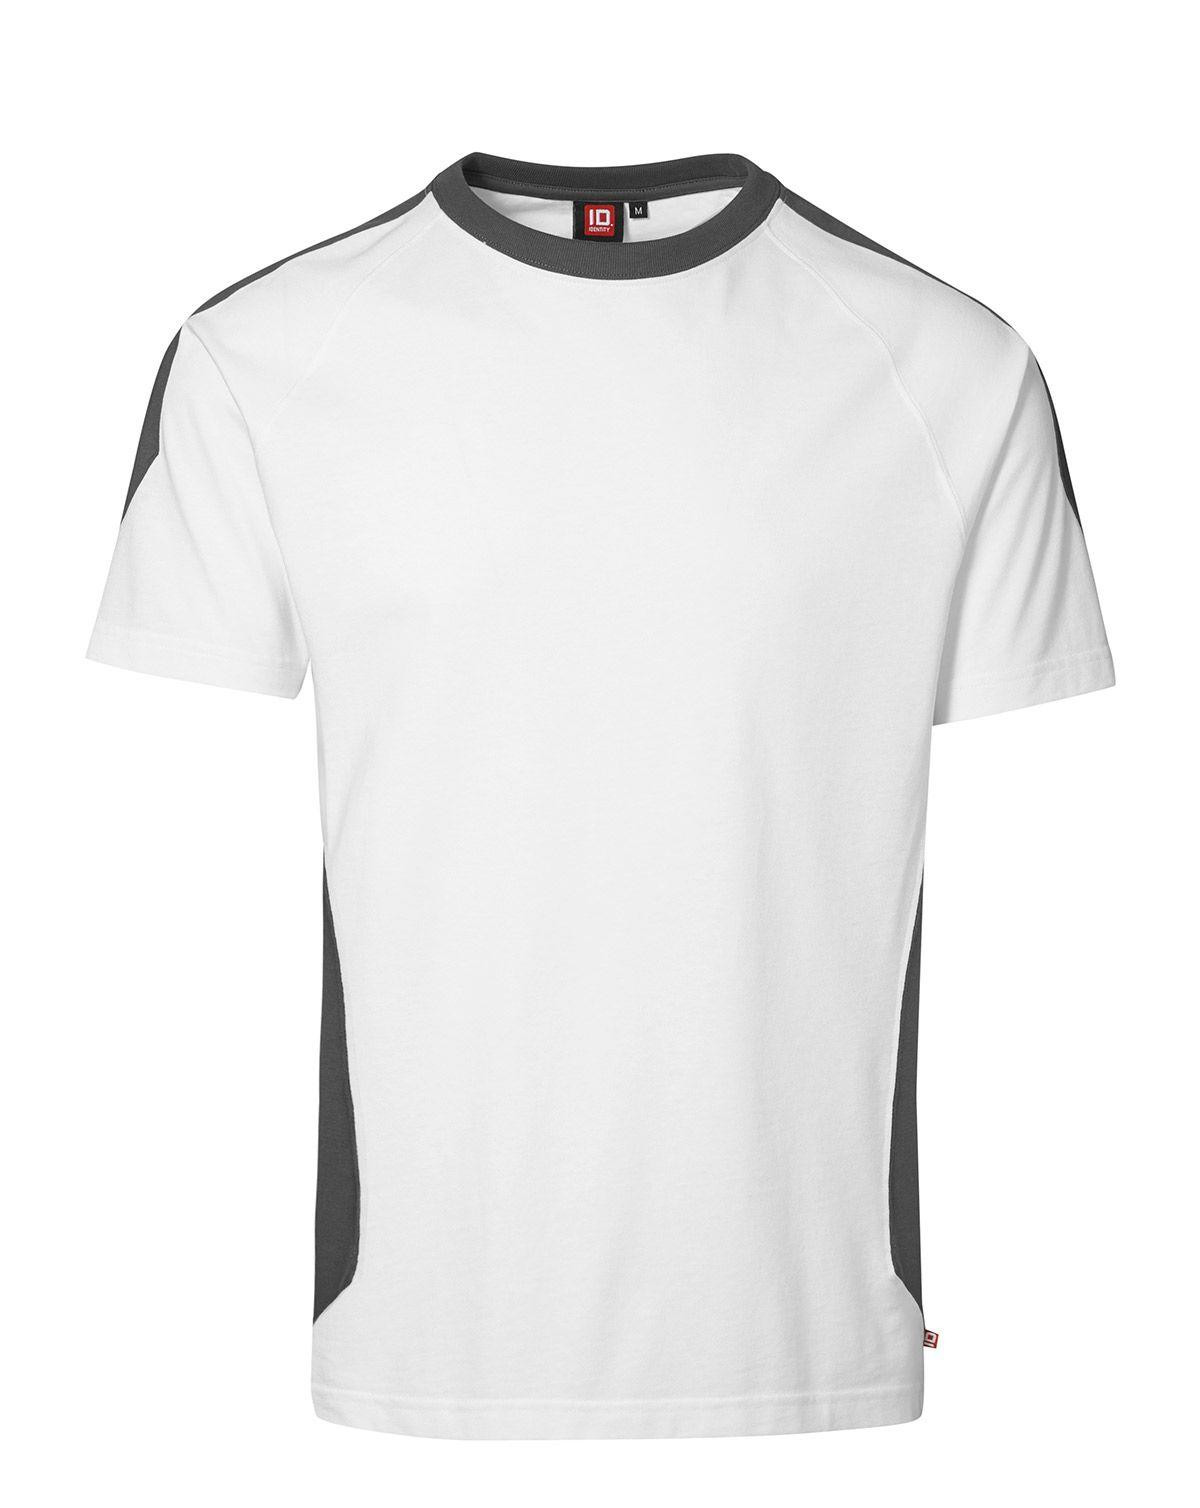 ID PRO Wear T-shirt (Hvid, 3XL)